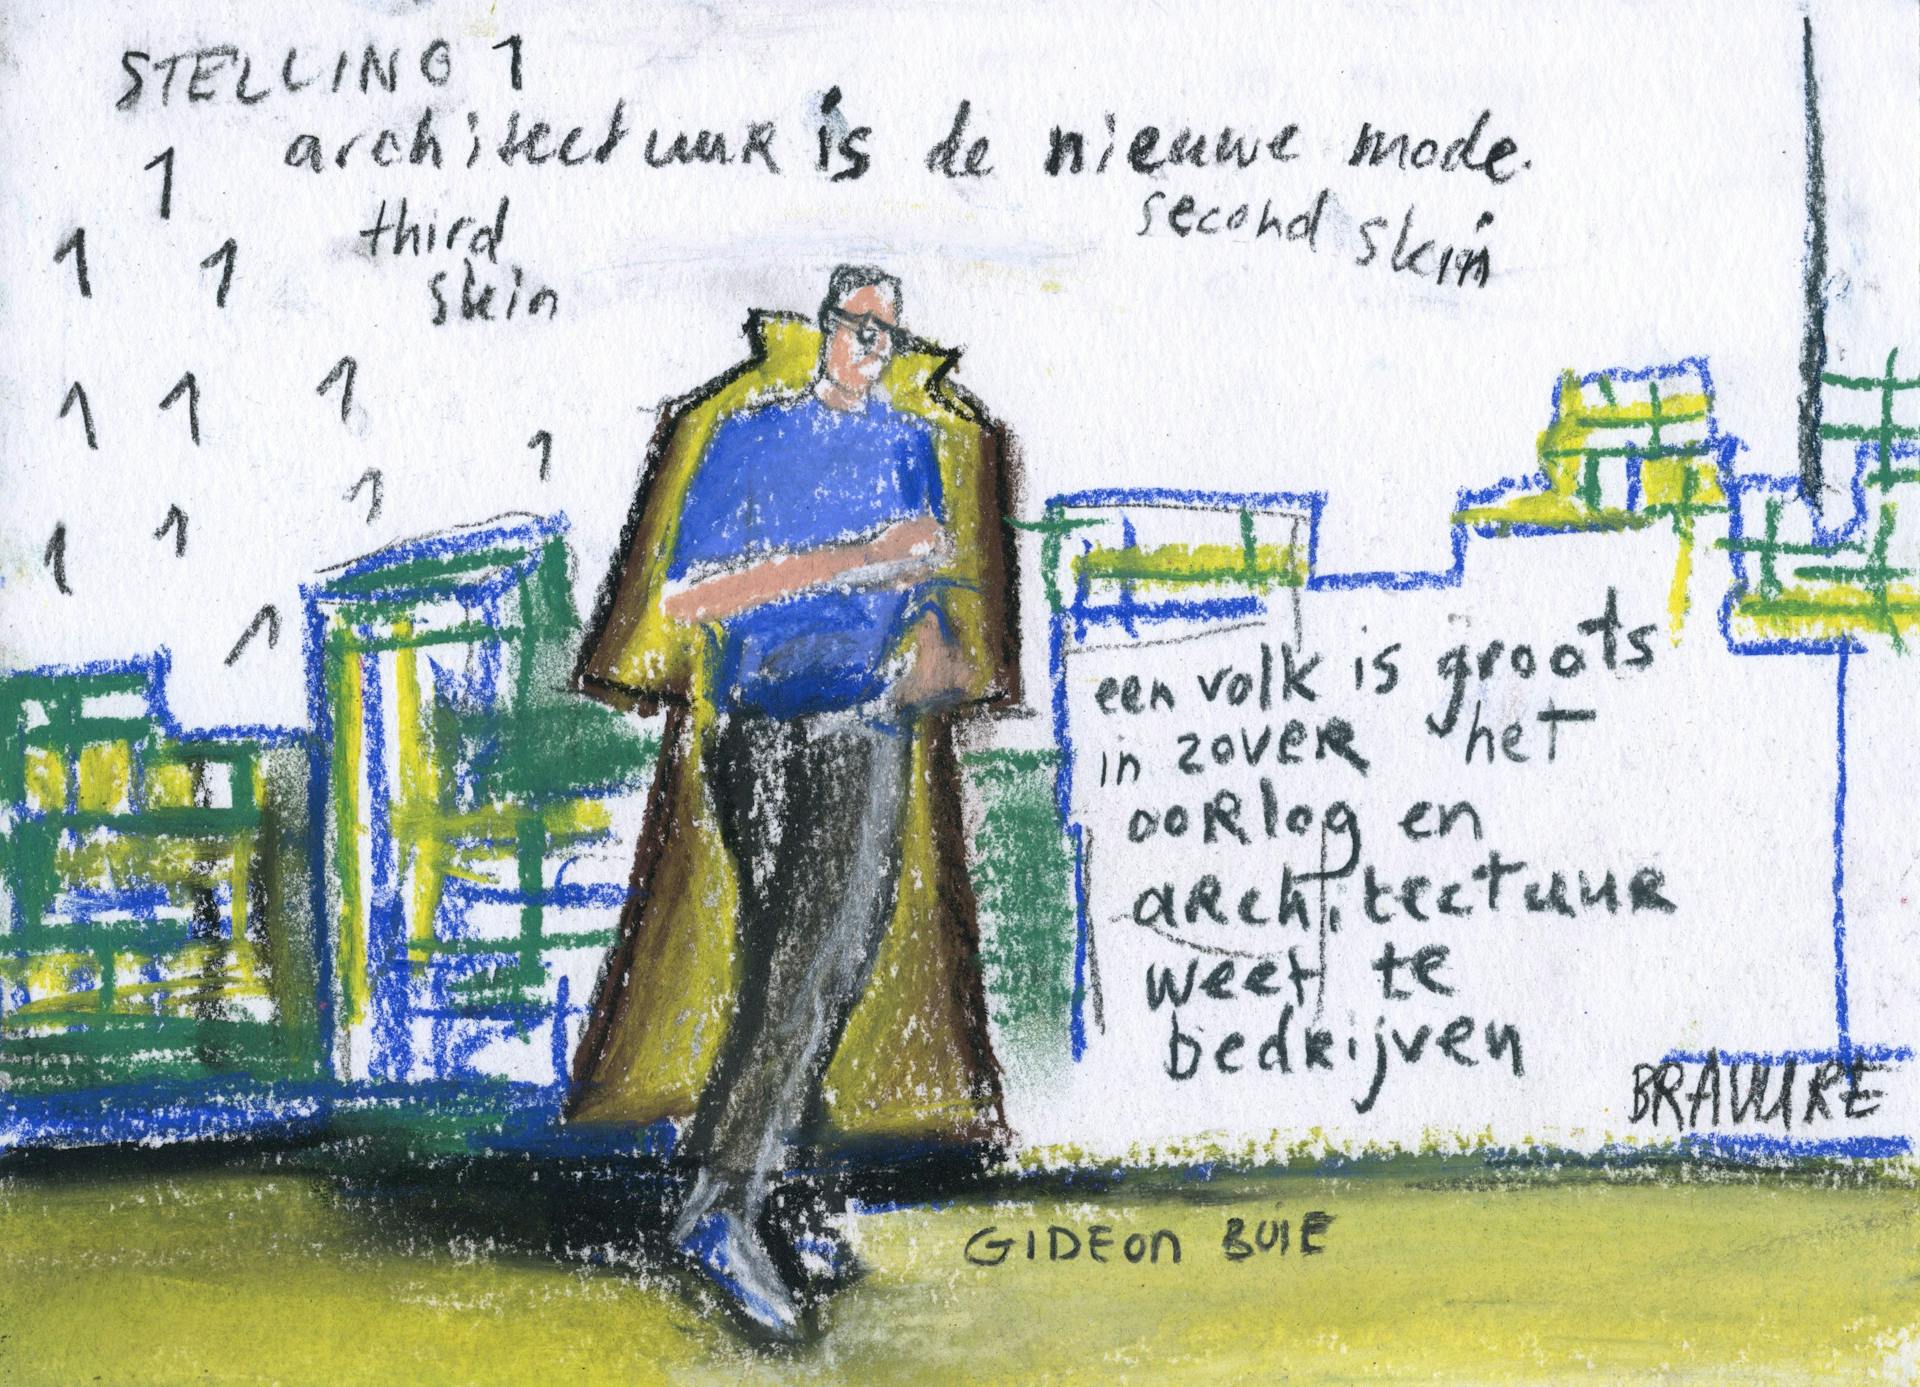  Thursday Night Architectuurdialoog Nederland Vlaanderen I. Beeldverslag van De Beeldvormers 